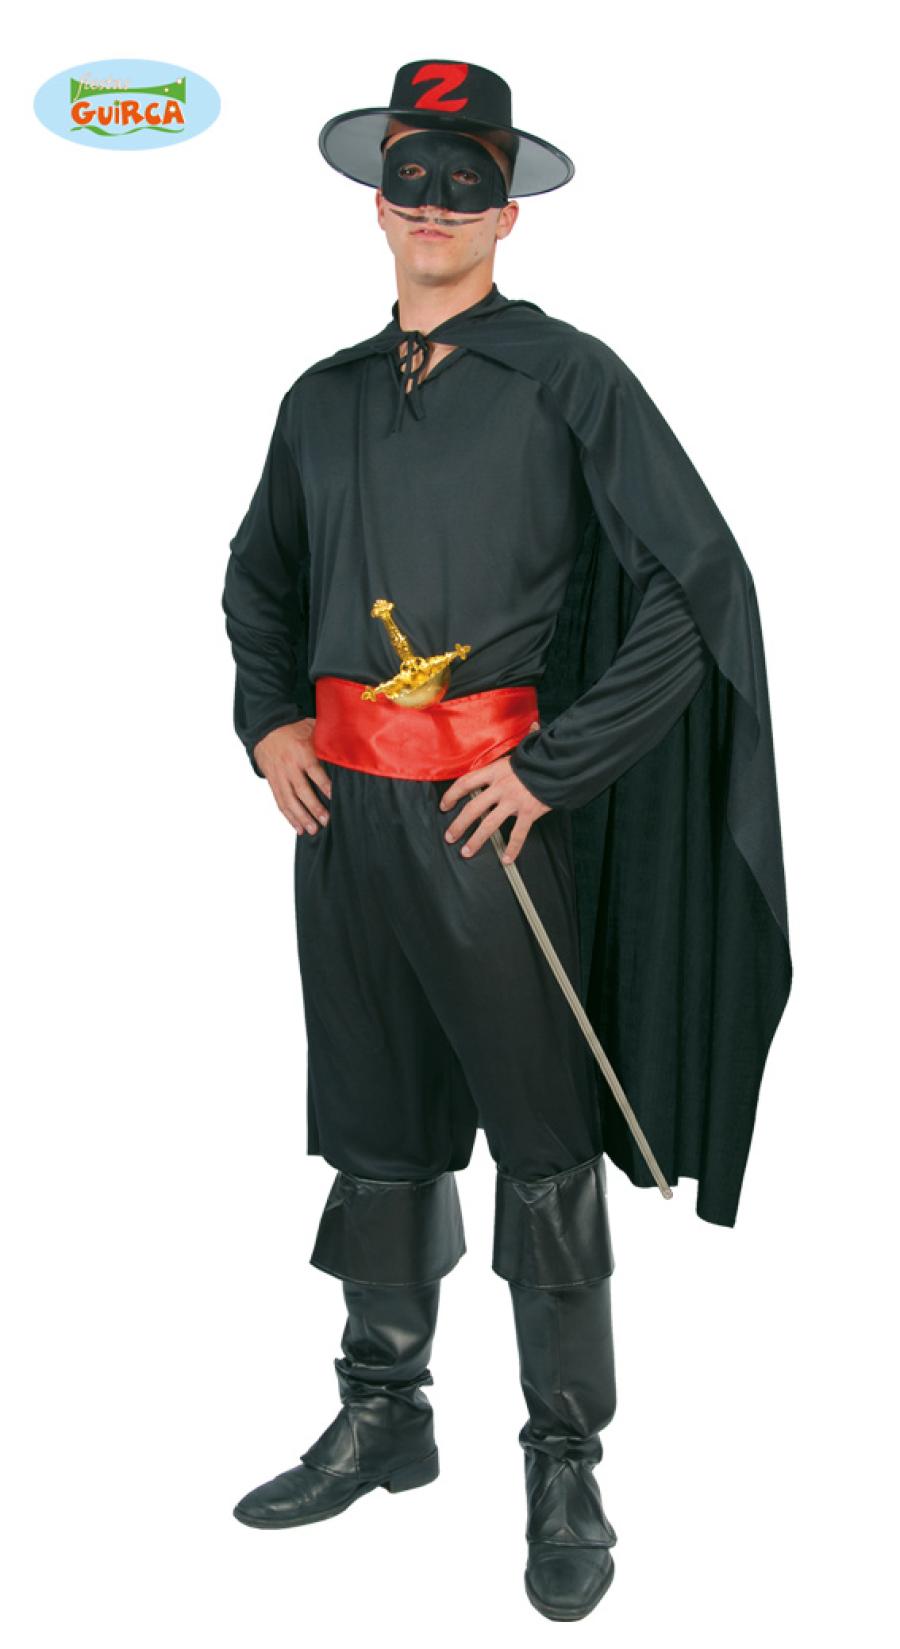 Costume Vestito Uomo Papa Carnevale - Zorro Giocattoli e Costumi